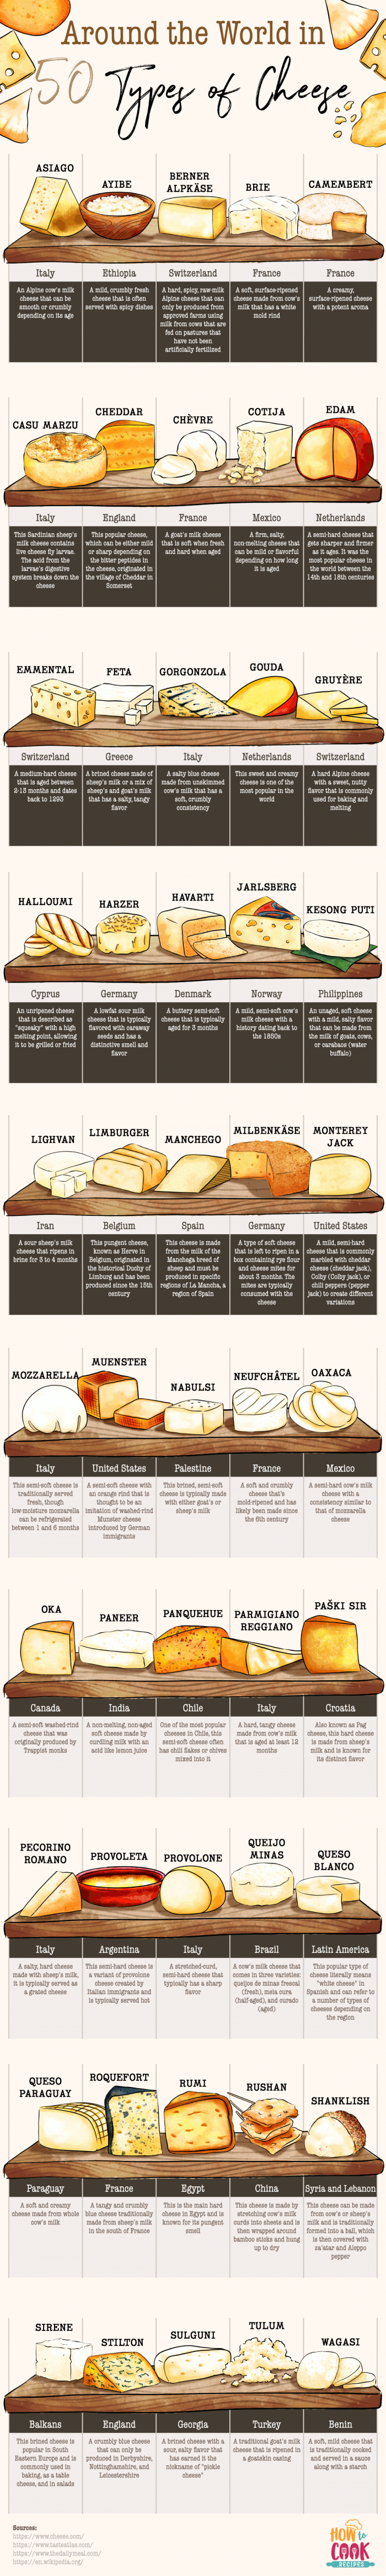 Types Of Cheese Around The World